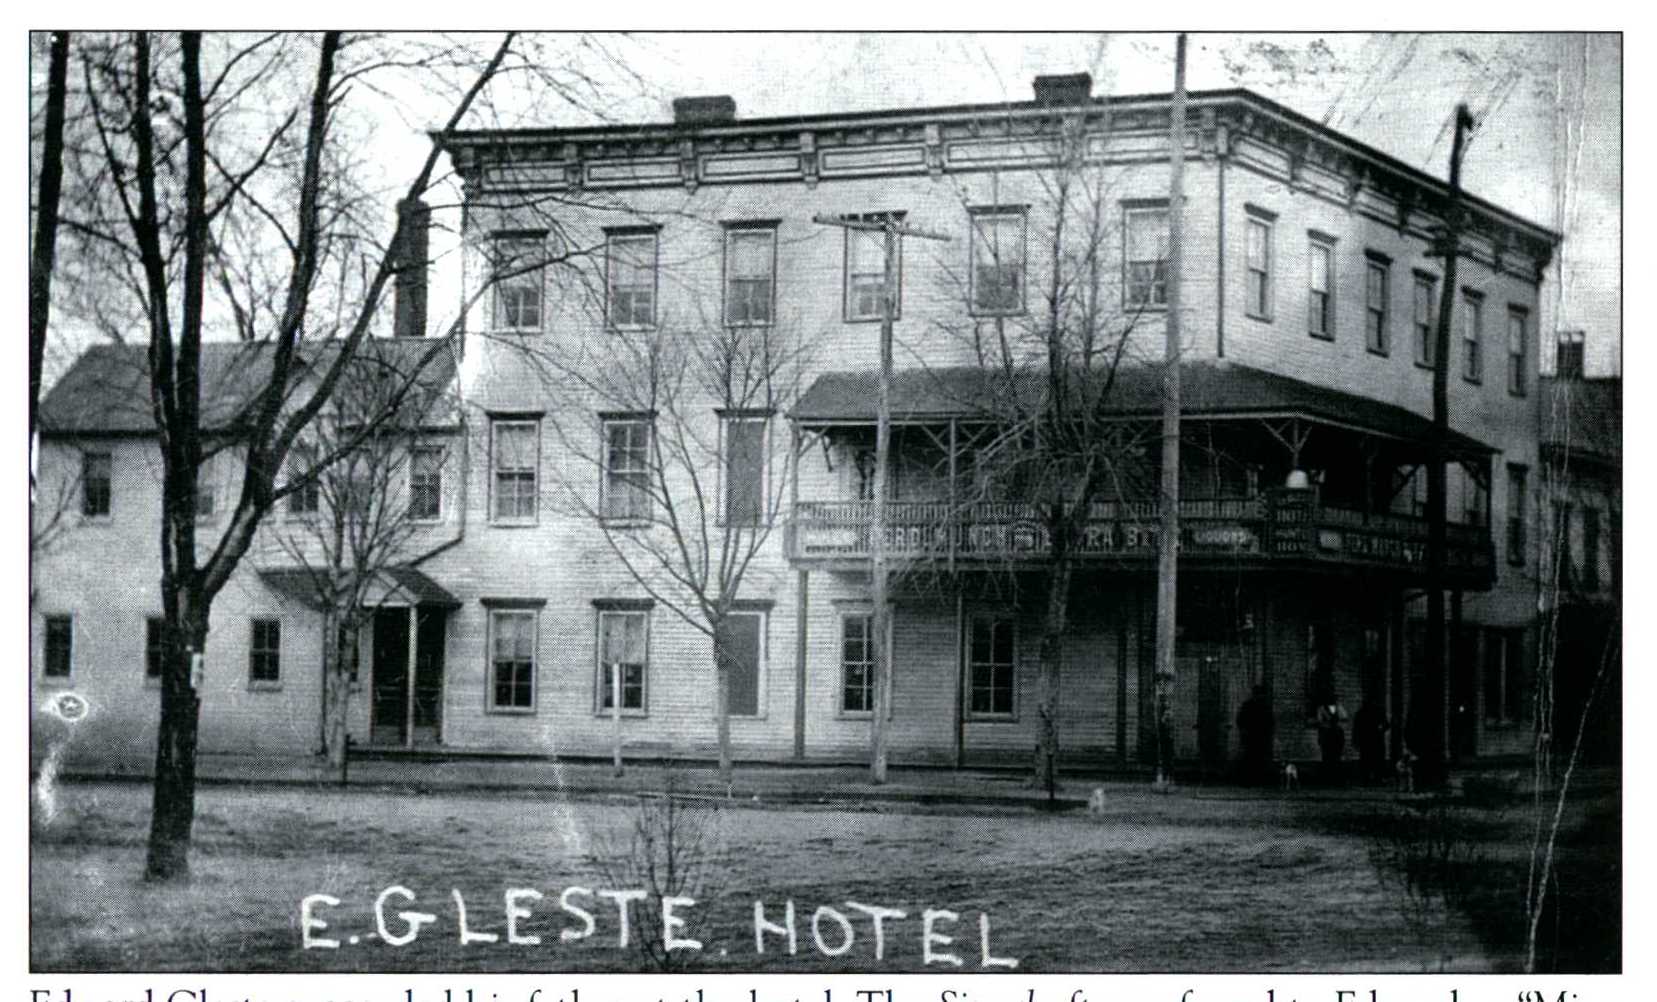 Gleste's Hotel